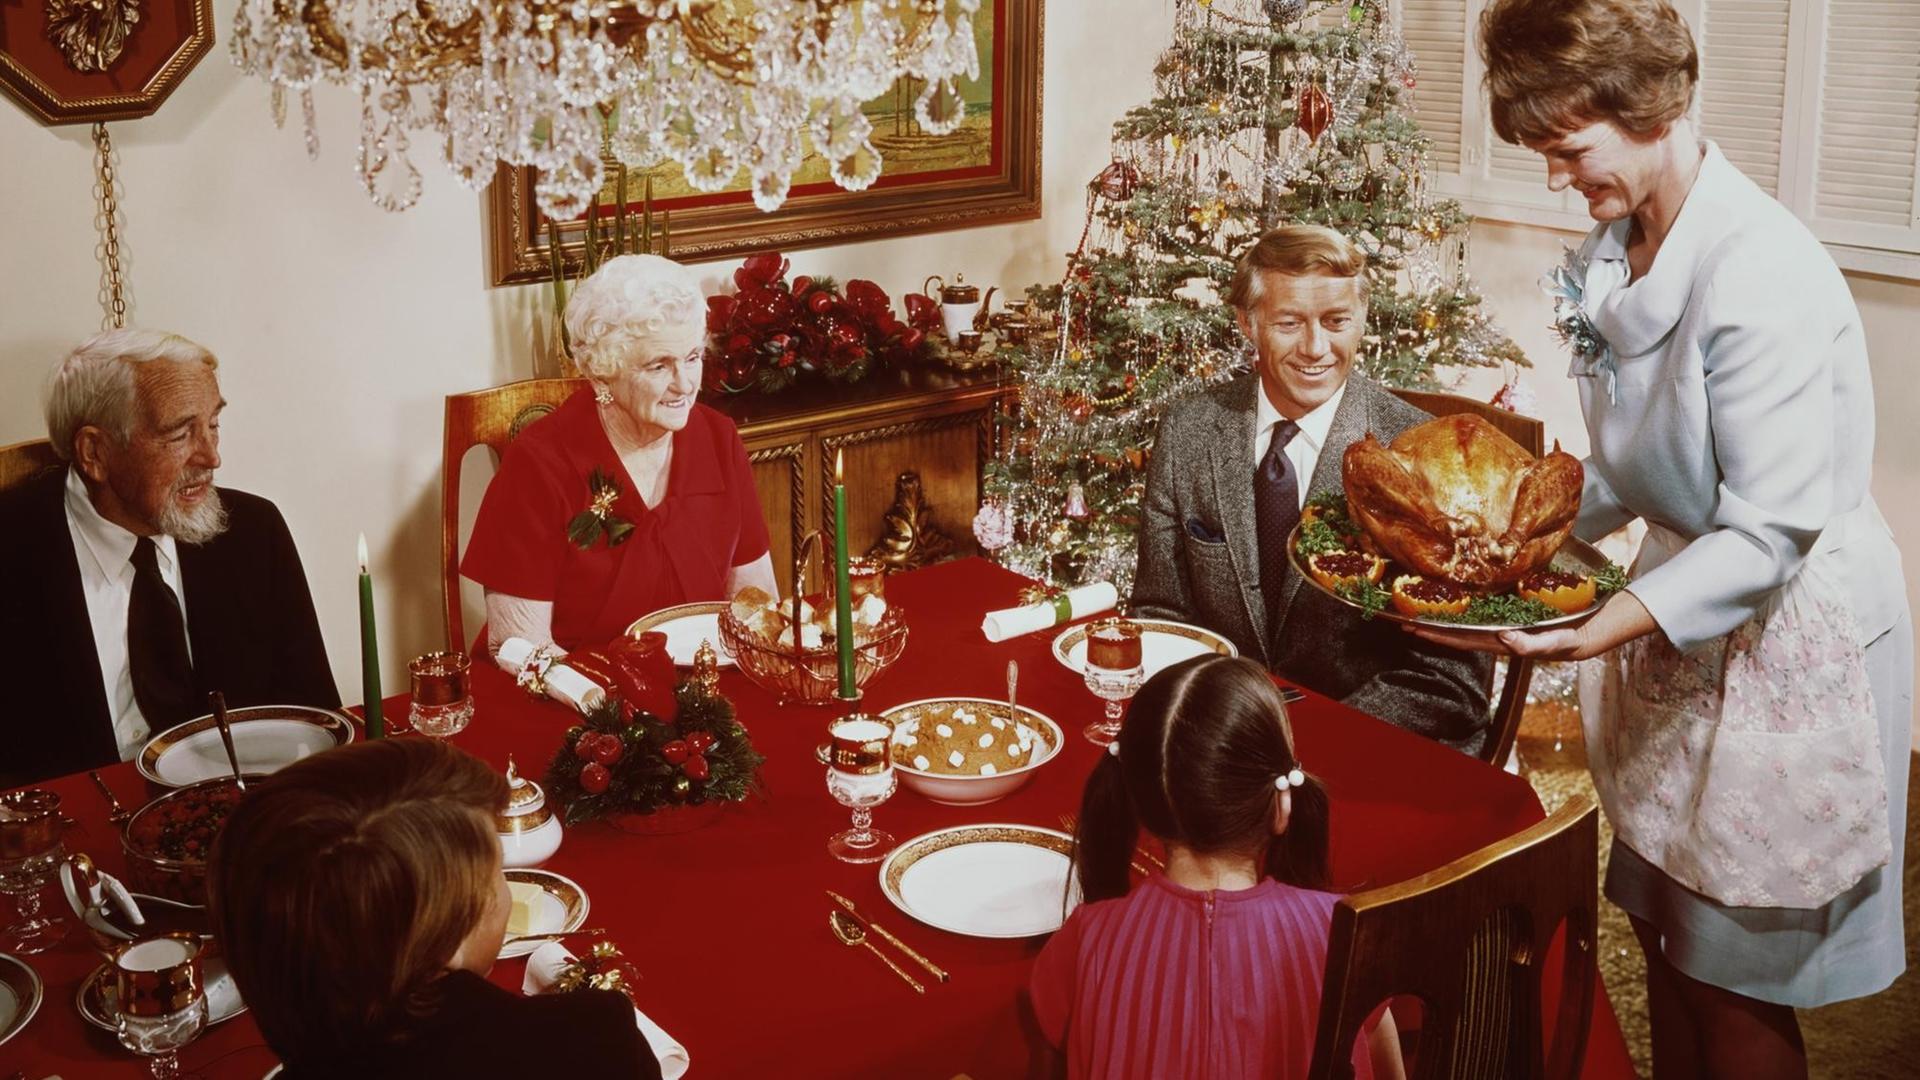 Eine Aufnahe von 1965 zeigt eine Frau, die einen großen Truthahn zum Weihnachtsessen auf den Tisch bringt. Dort sitzen Großeltern und Kinder am gedeckten Tisch. Im Hintergrund ist ein geschmückter Weihnachtsbaum zu sehen.